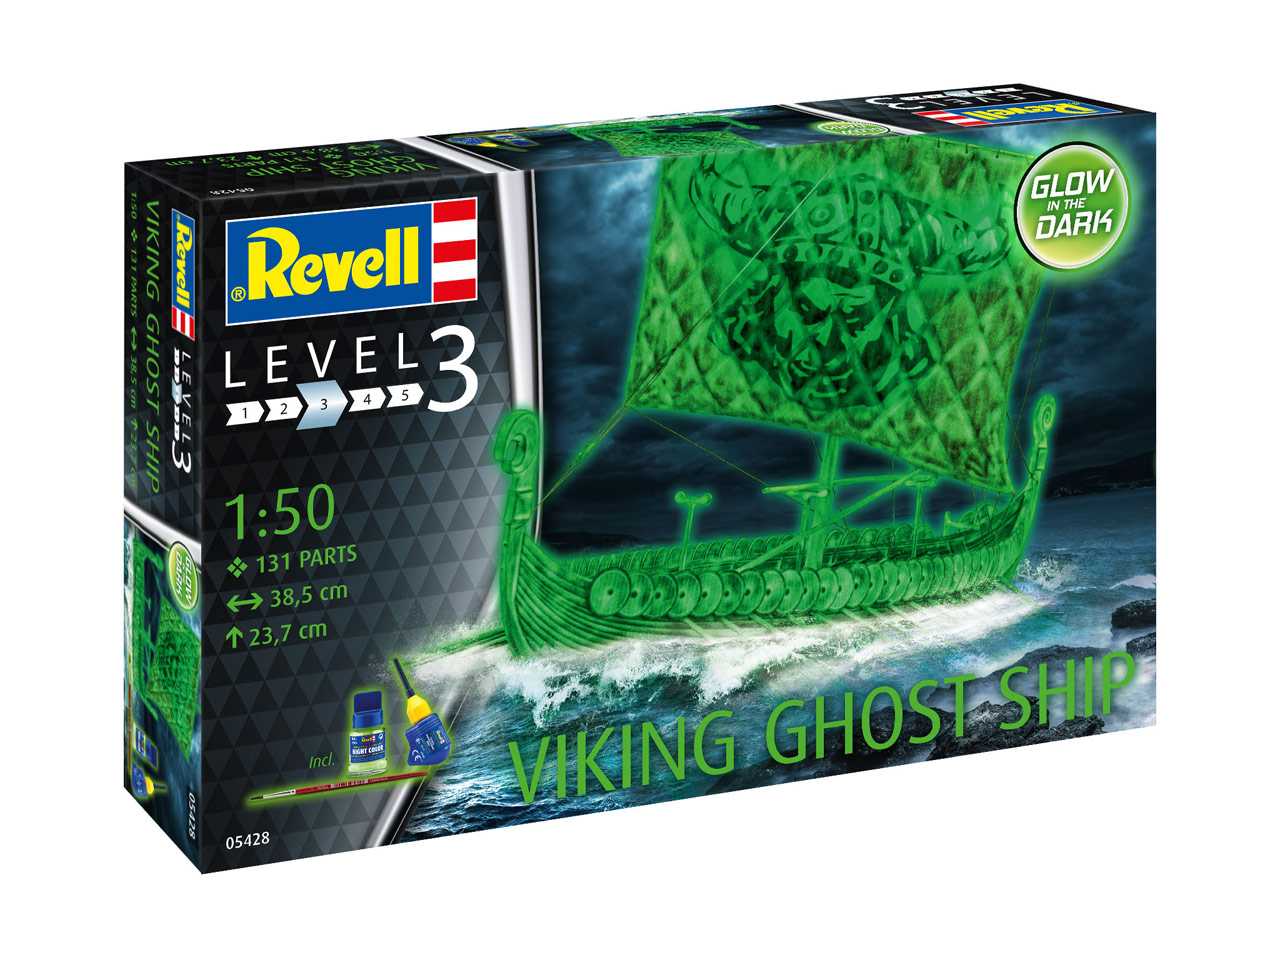 Revell Plastic ModelKit loď 05428 - Viking Ghost Ship (1:50)